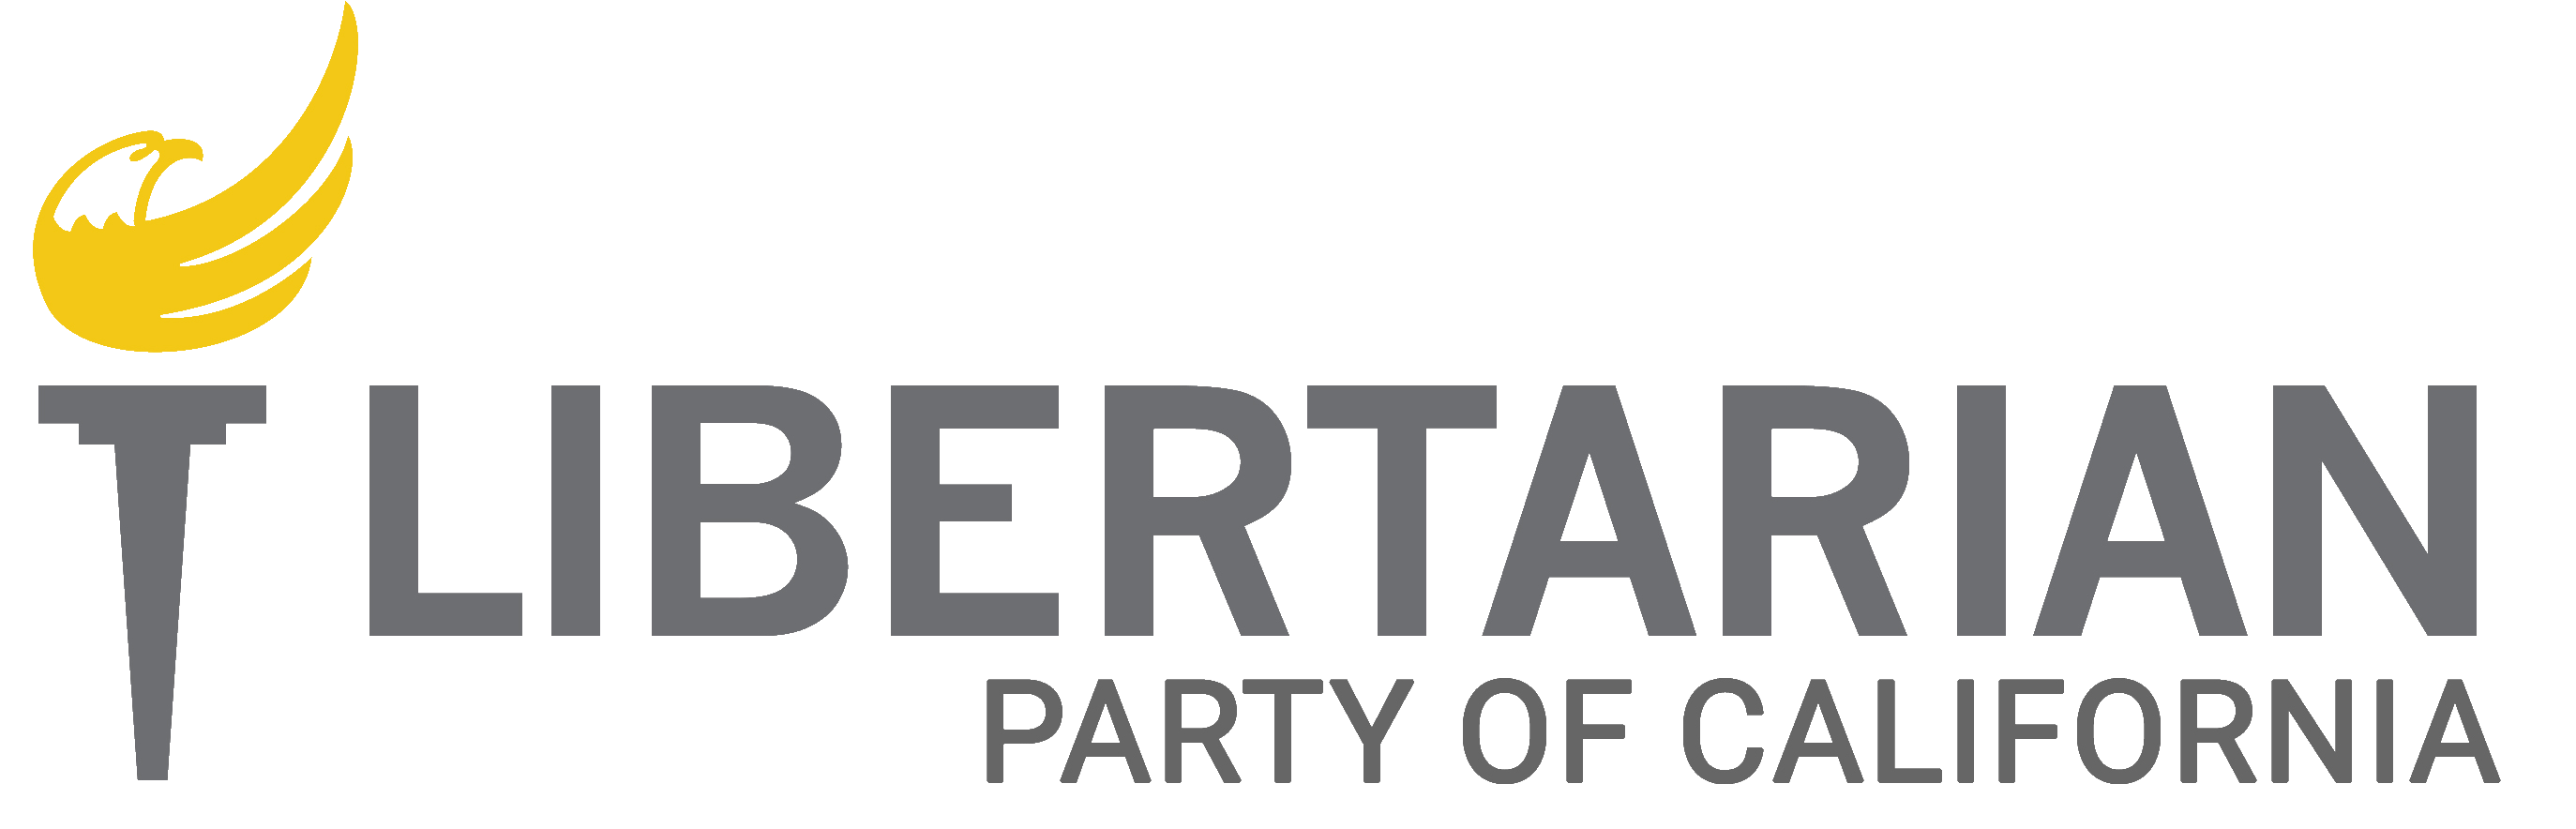 California Libertarian Party